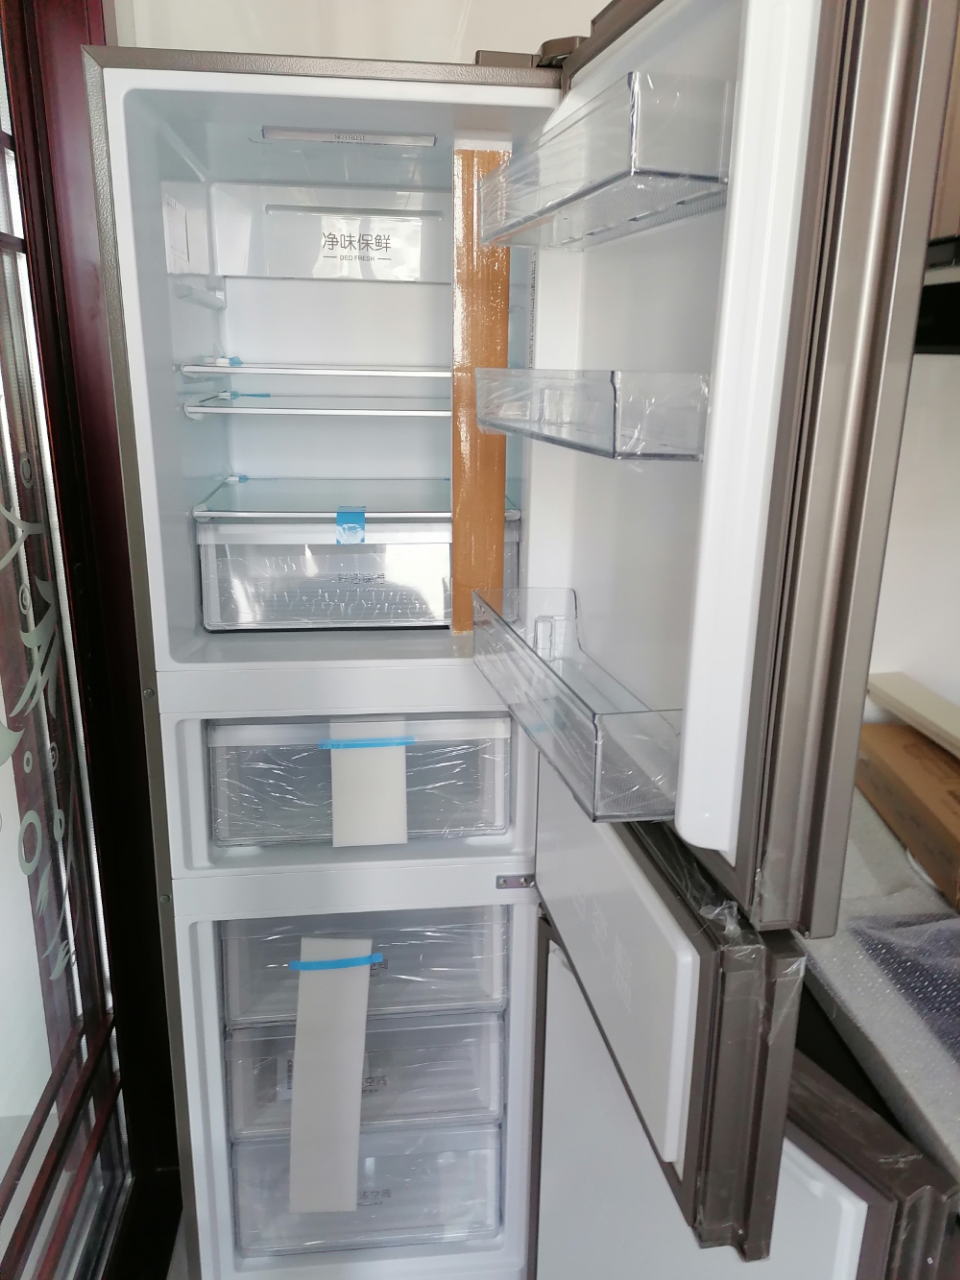 haier/海尔253升冰箱 变频干湿分储无霜静音家用三门冰箱智能电冰箱